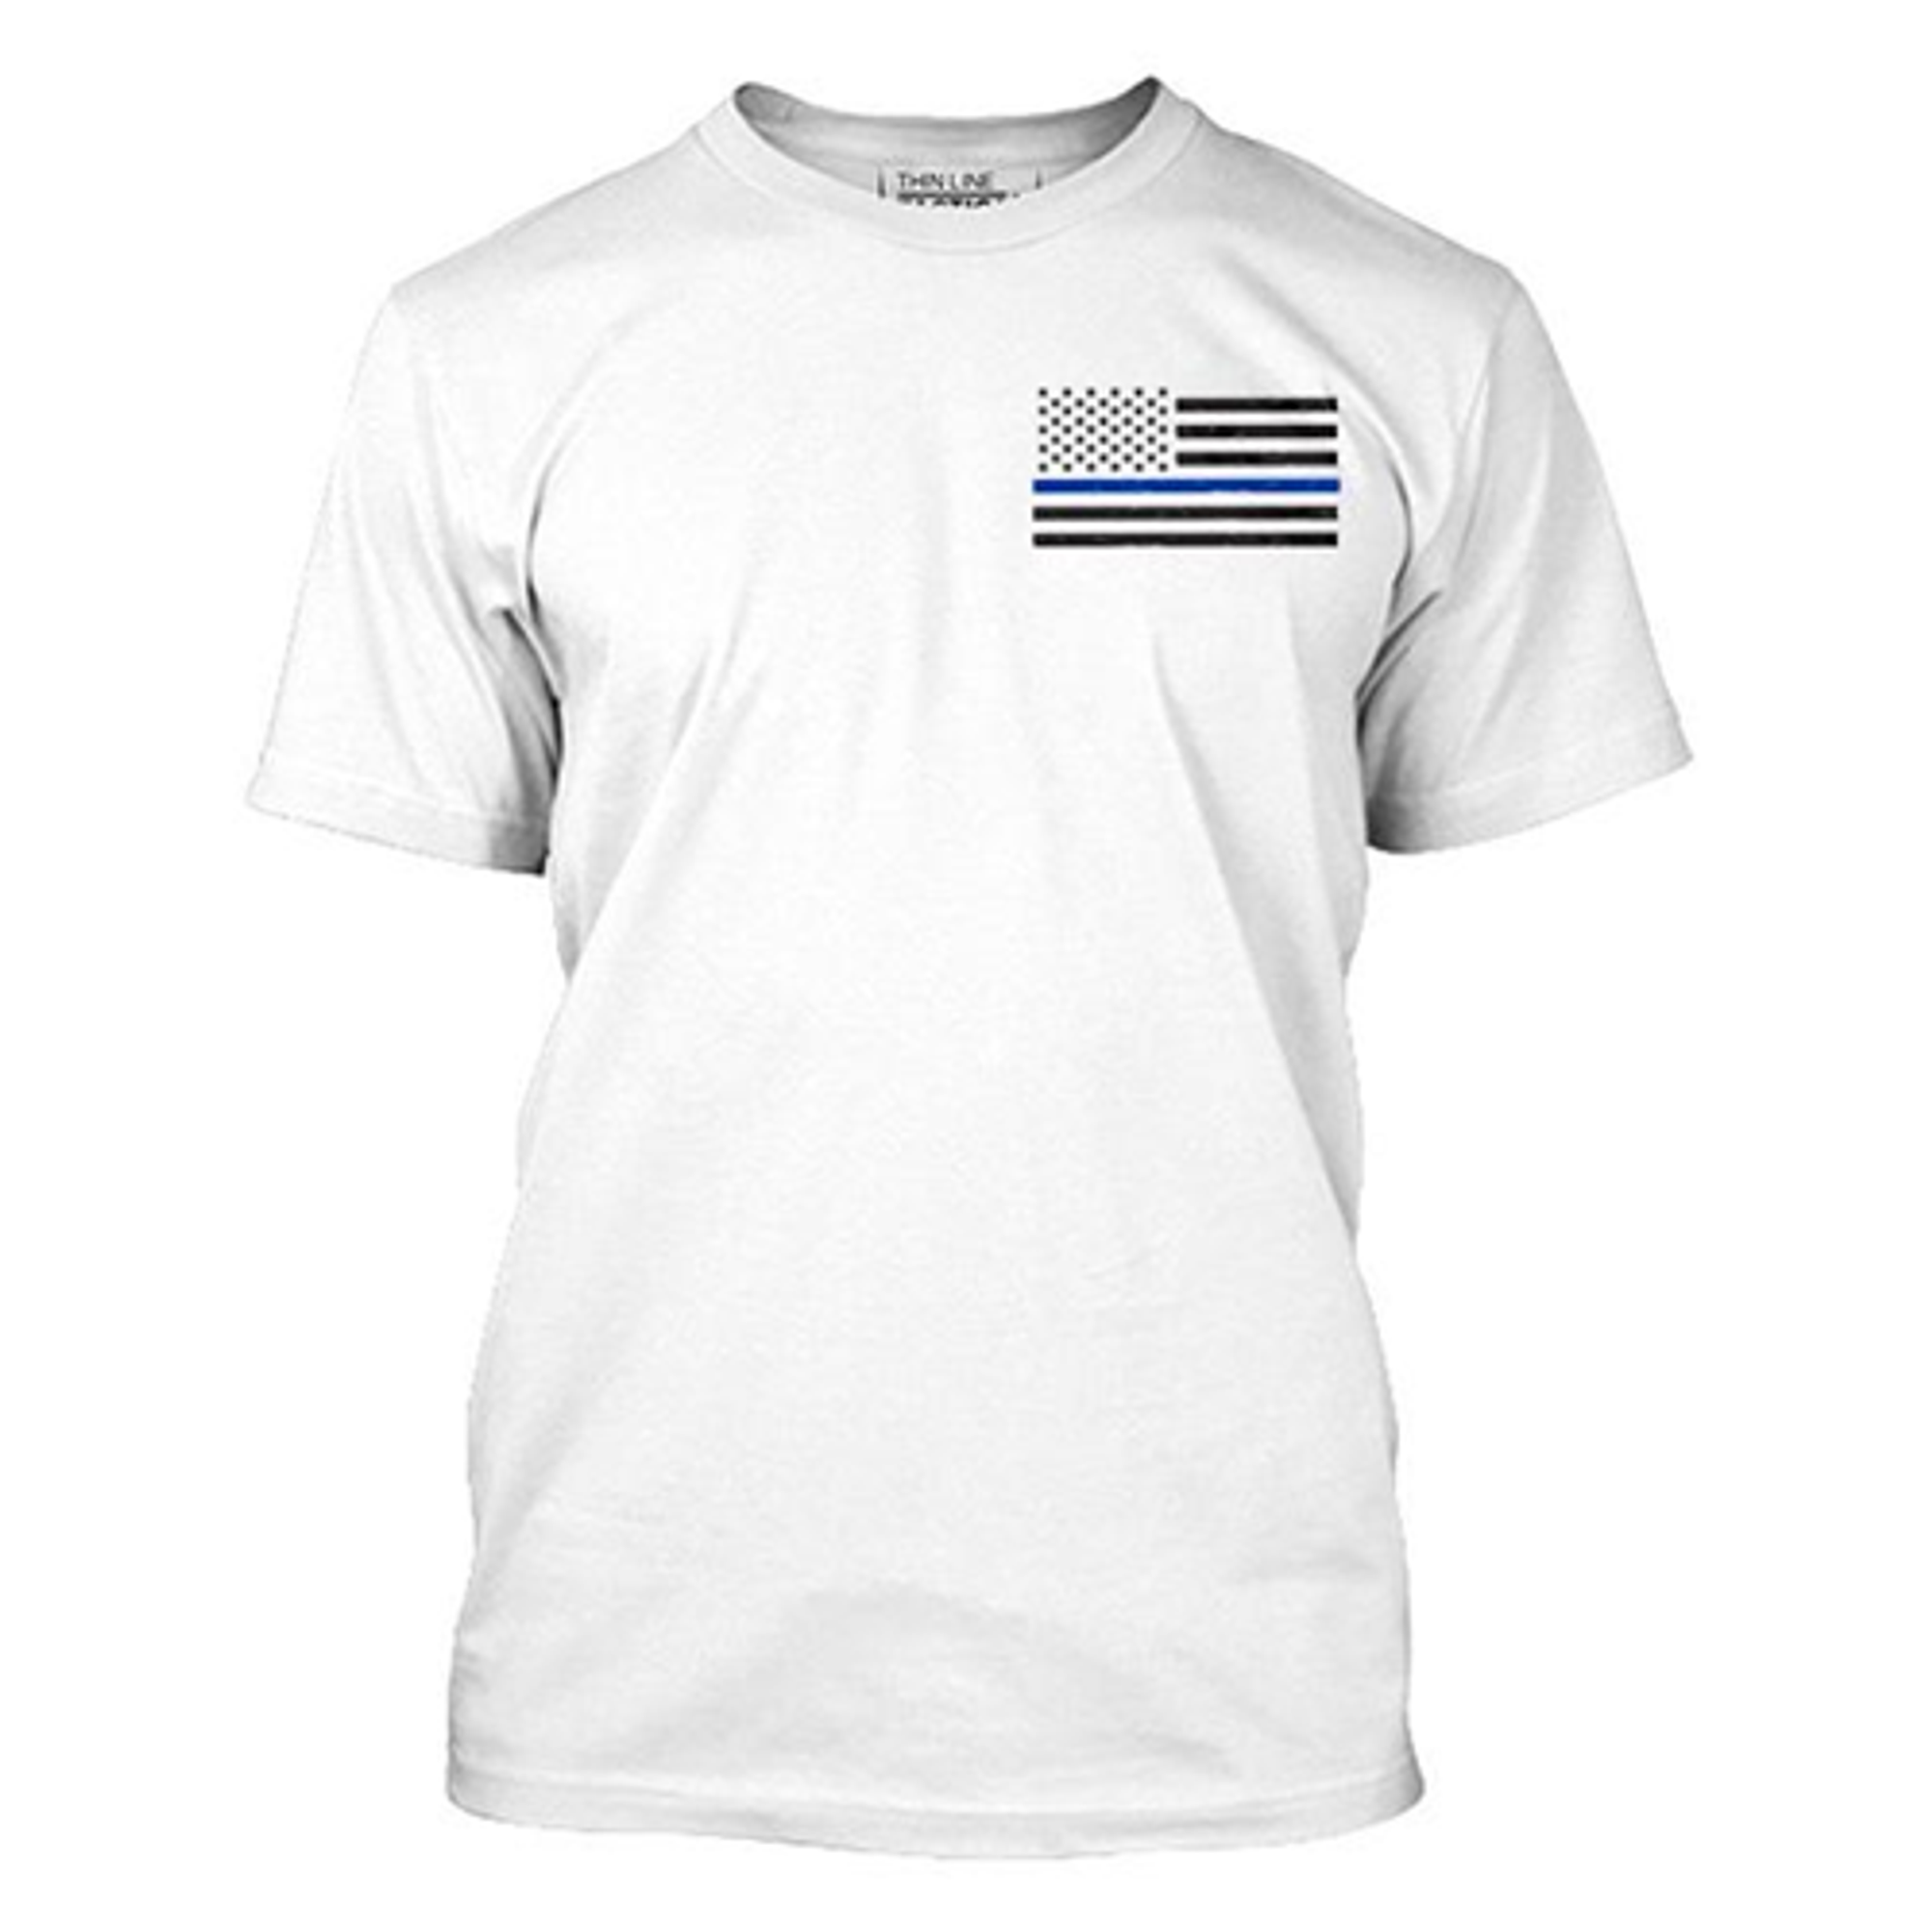 Men's - T-shirt - Thin Blue Line Flag - KRTBL-MEN-TBL-SM-LOGO-WHITE-LG